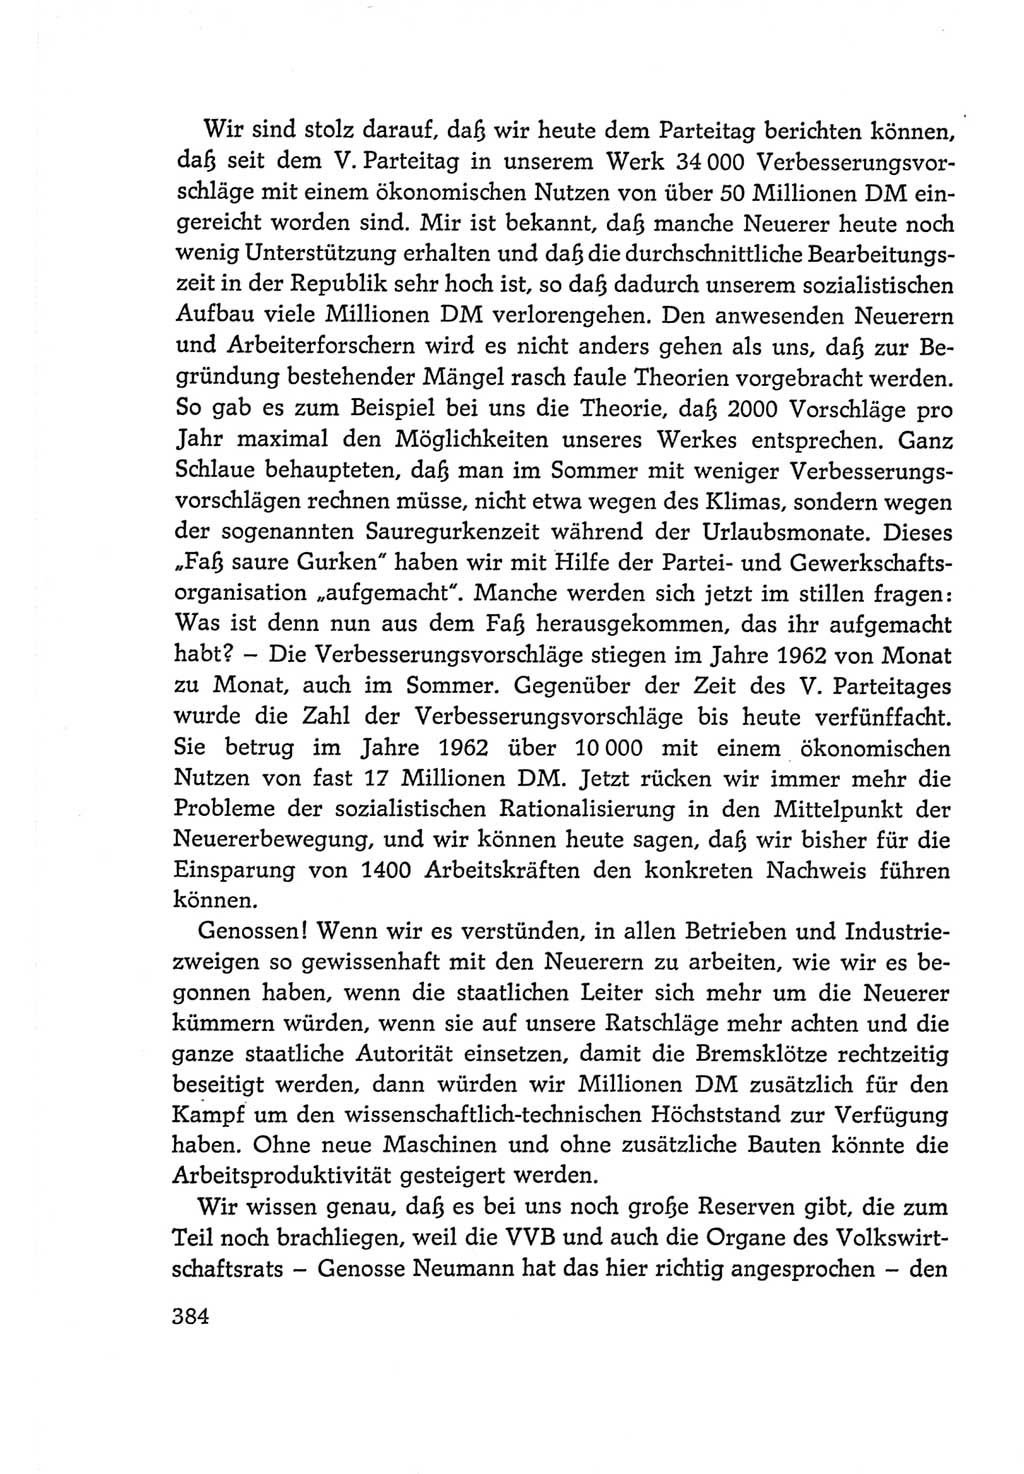 Protokoll der Verhandlungen des Ⅵ. Parteitages der Sozialistischen Einheitspartei Deutschlands (SED) [Deutsche Demokratische Republik (DDR)] 1963, Band Ⅰ, Seite 384 (Prot. Verh. Ⅵ. PT SED DDR 1963, Bd. Ⅰ, S. 384)